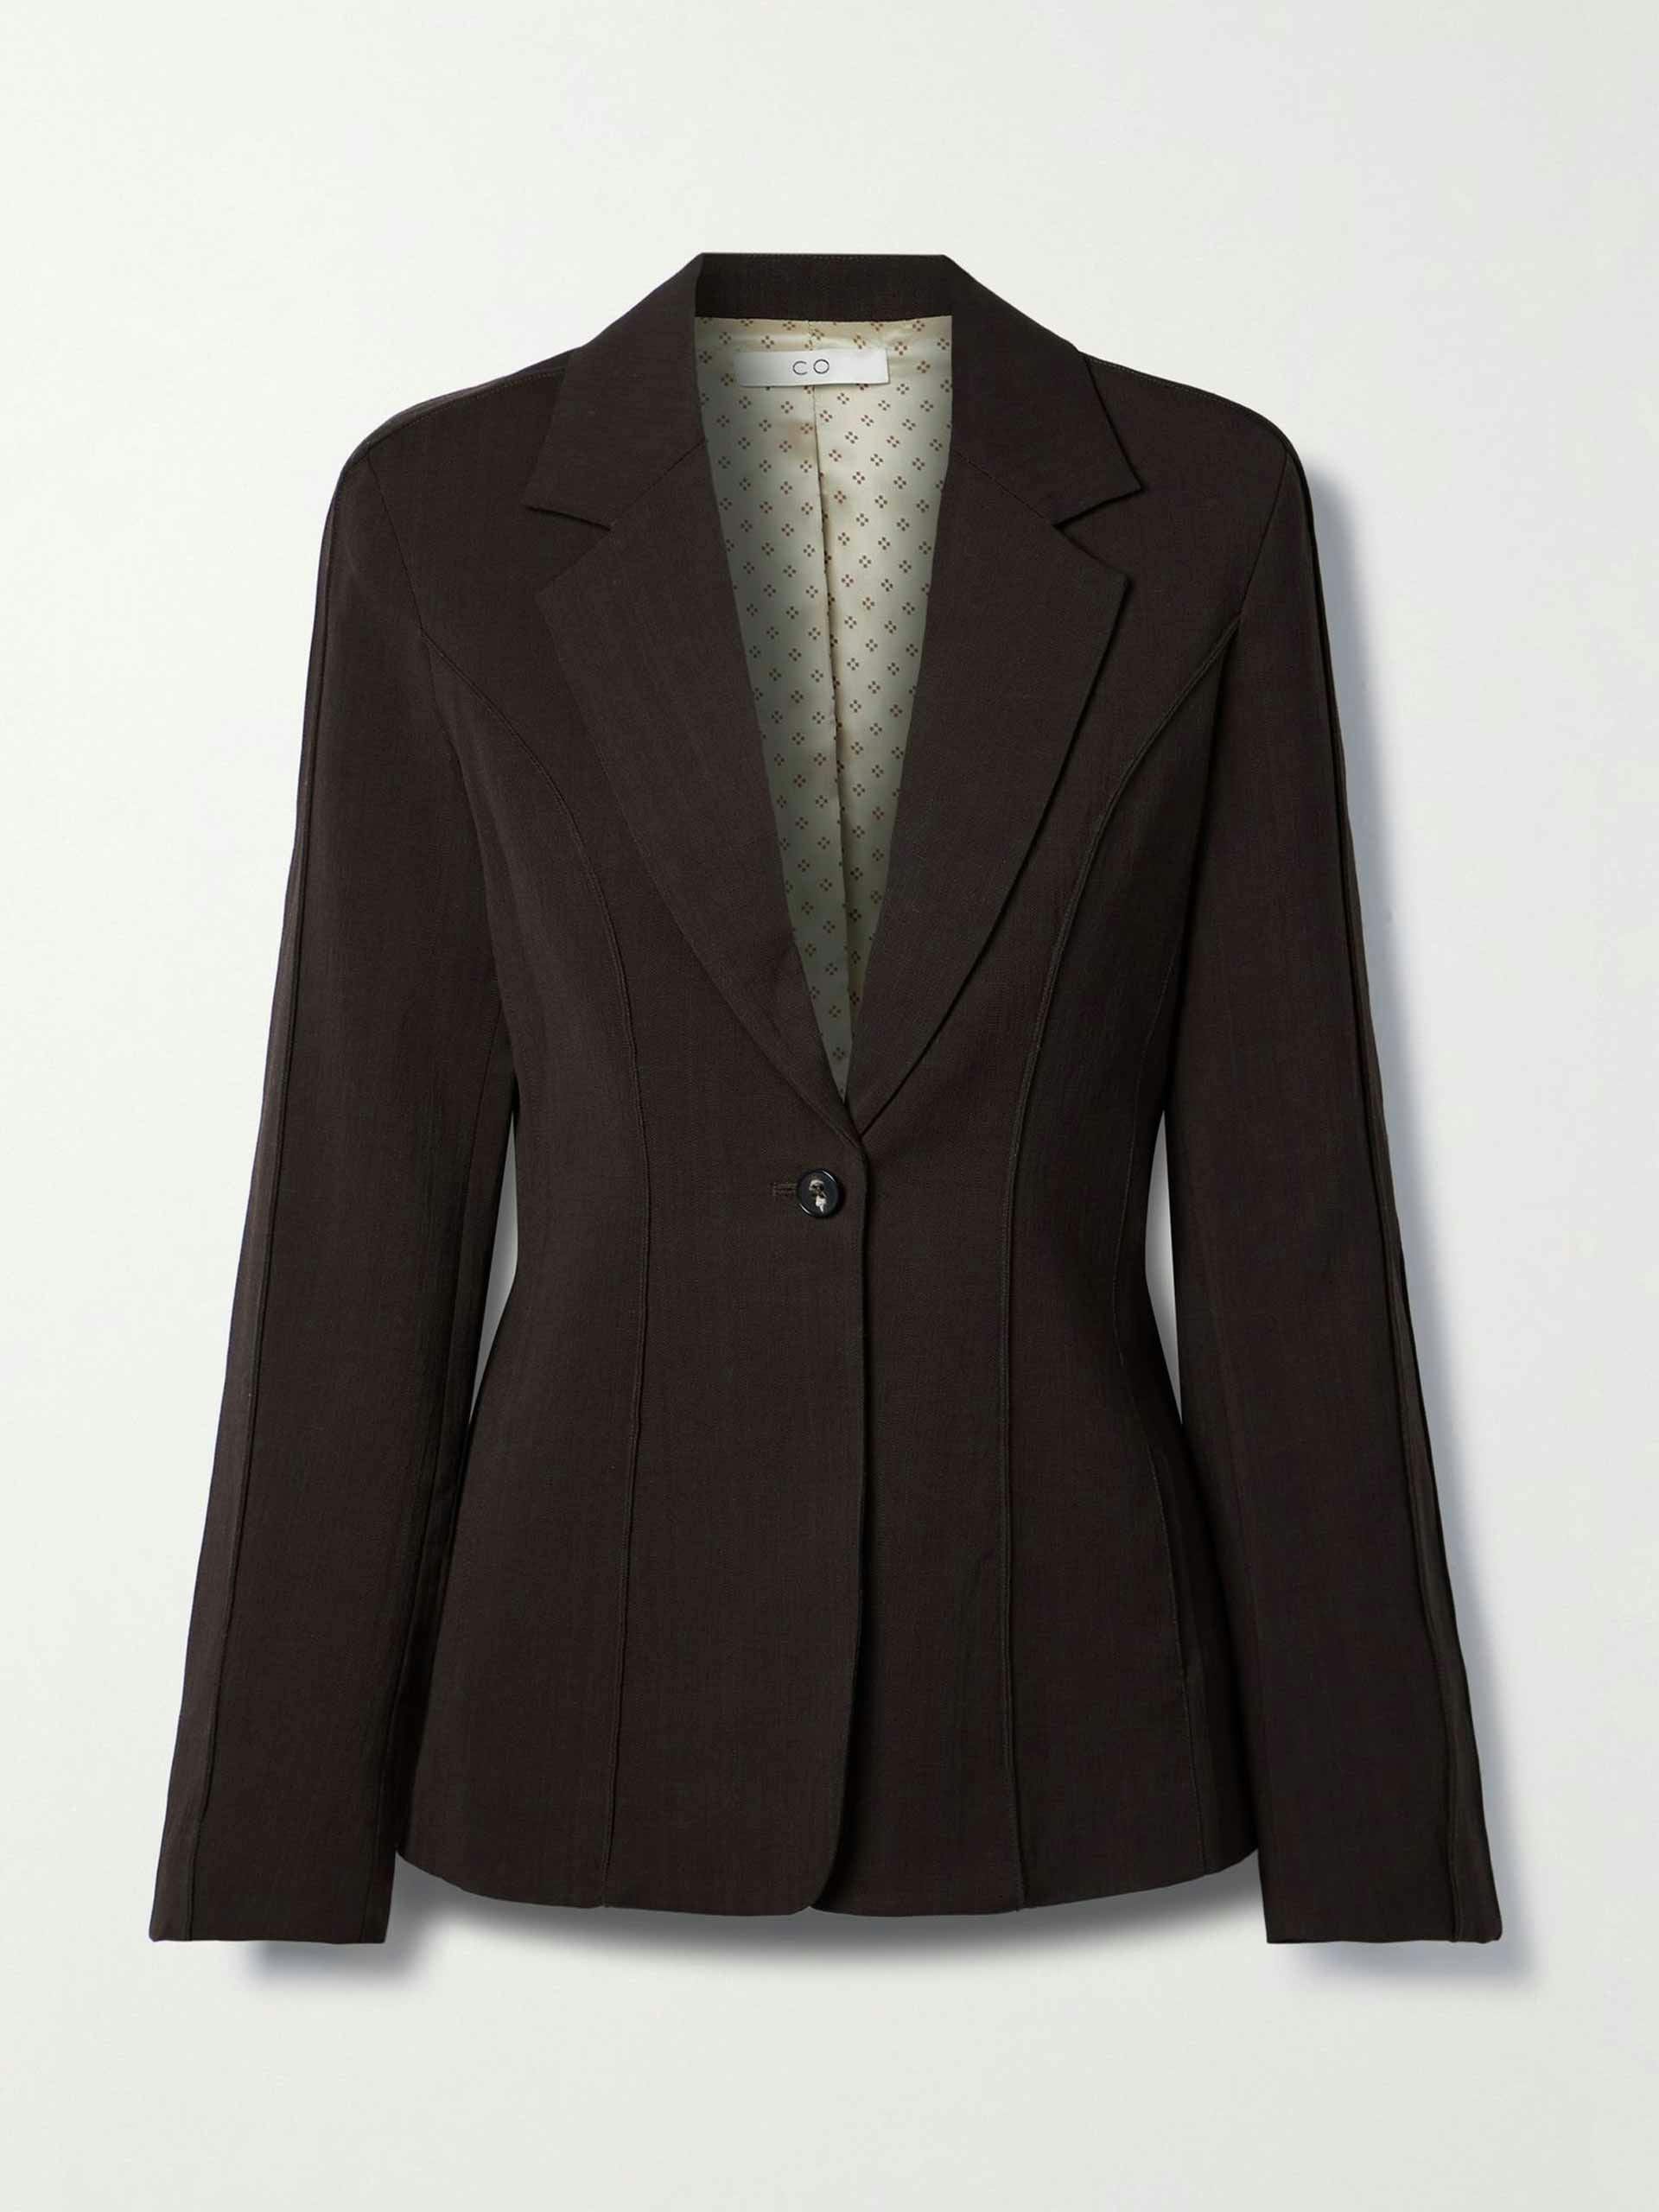 Woven blazer, dark brown